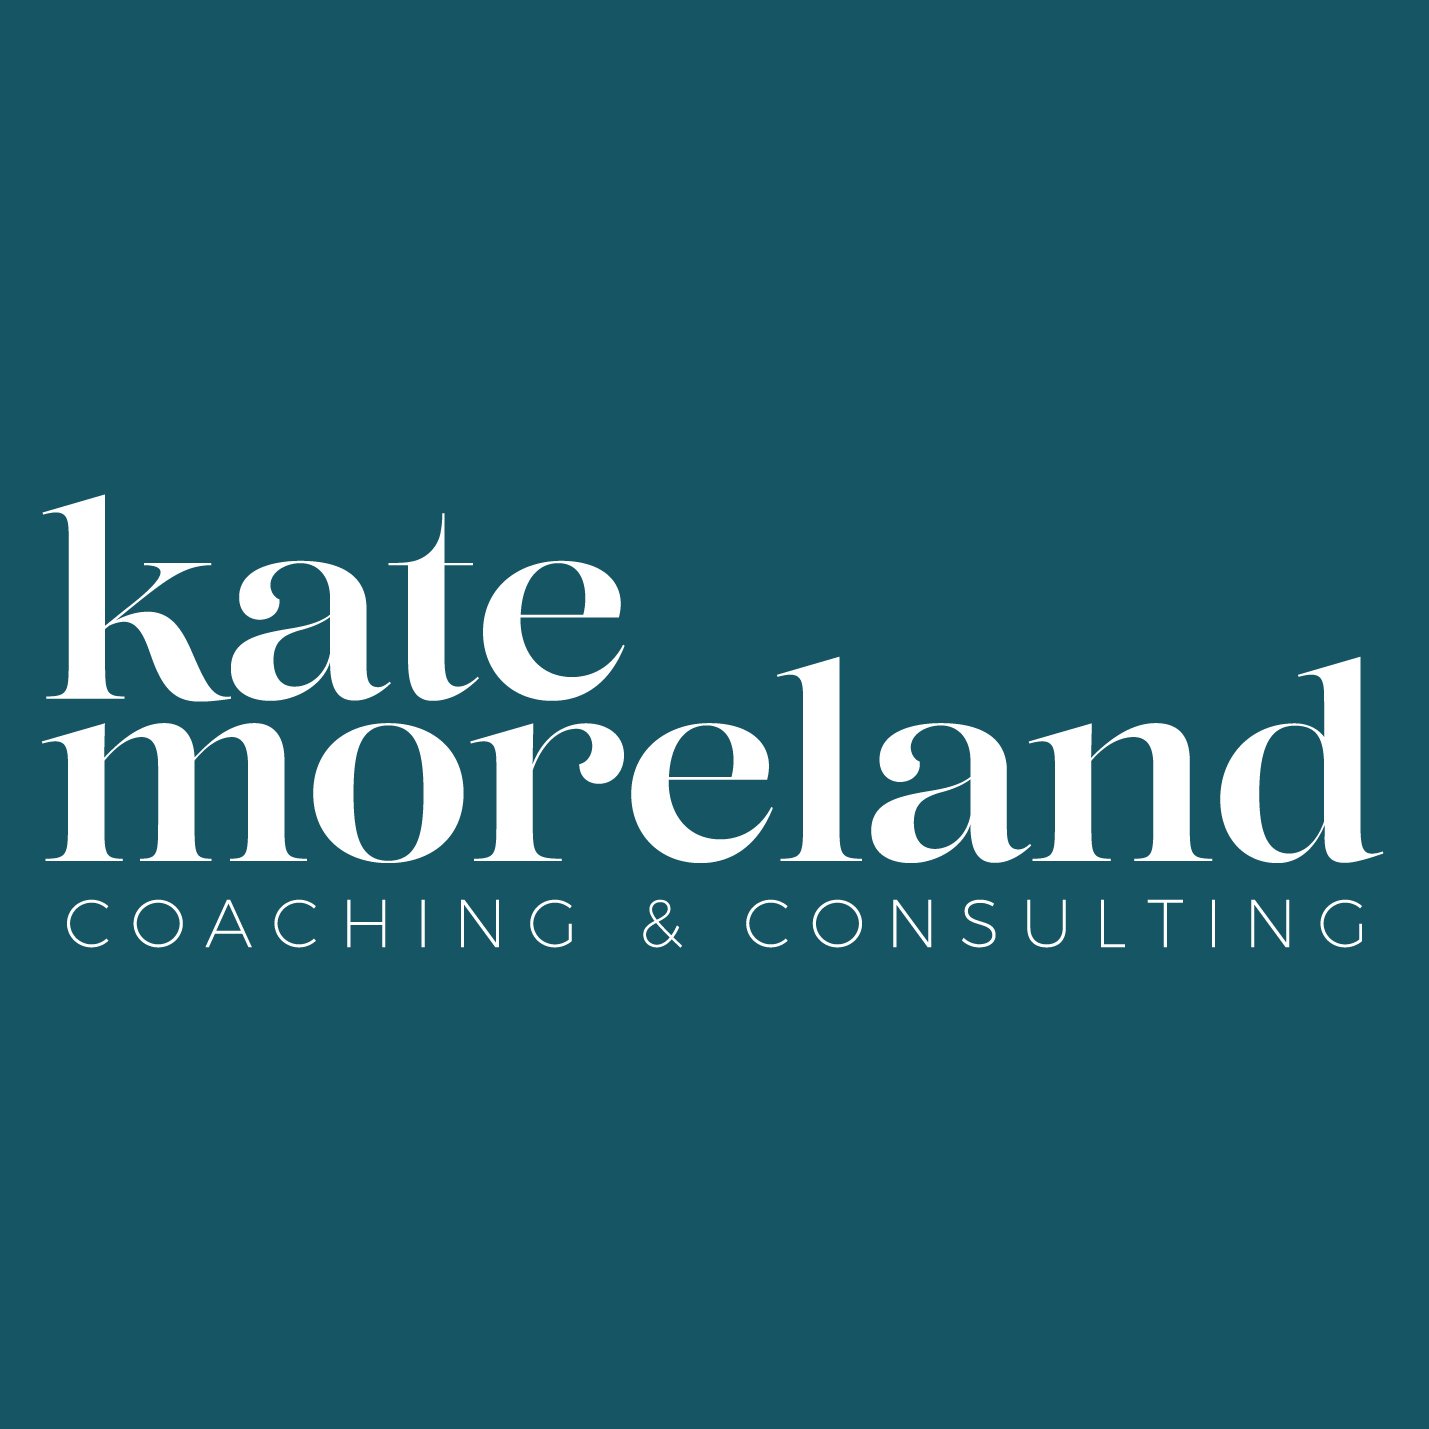 Kate Moreland Coaching